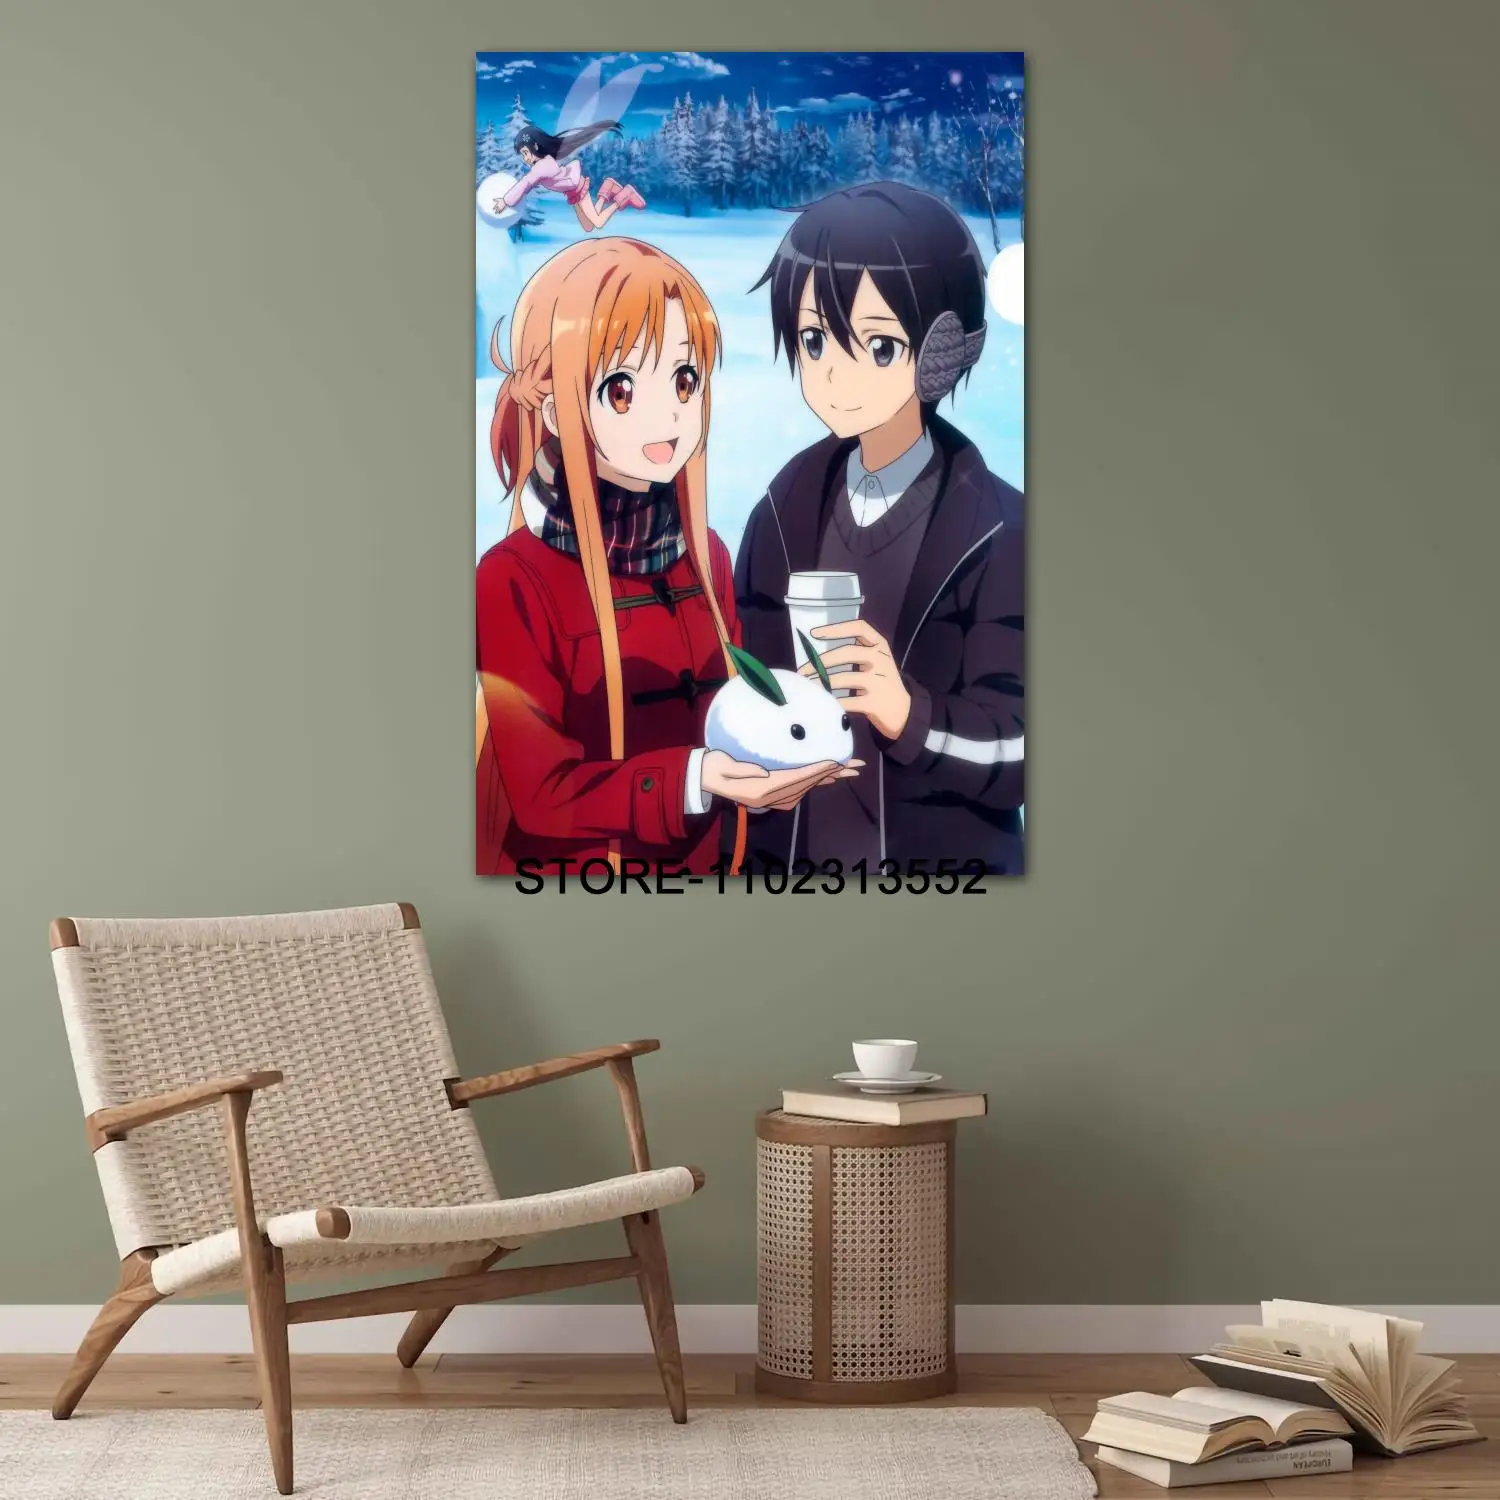 Imagen "Sf2ed95e8bbdc46eab0054833cc25727fP" de muestra del producto Posters de Sword Art Online - Asuna y Kirito de la tienda online de regalos y coleccionables de cine, series, videojuegos, juguetes.